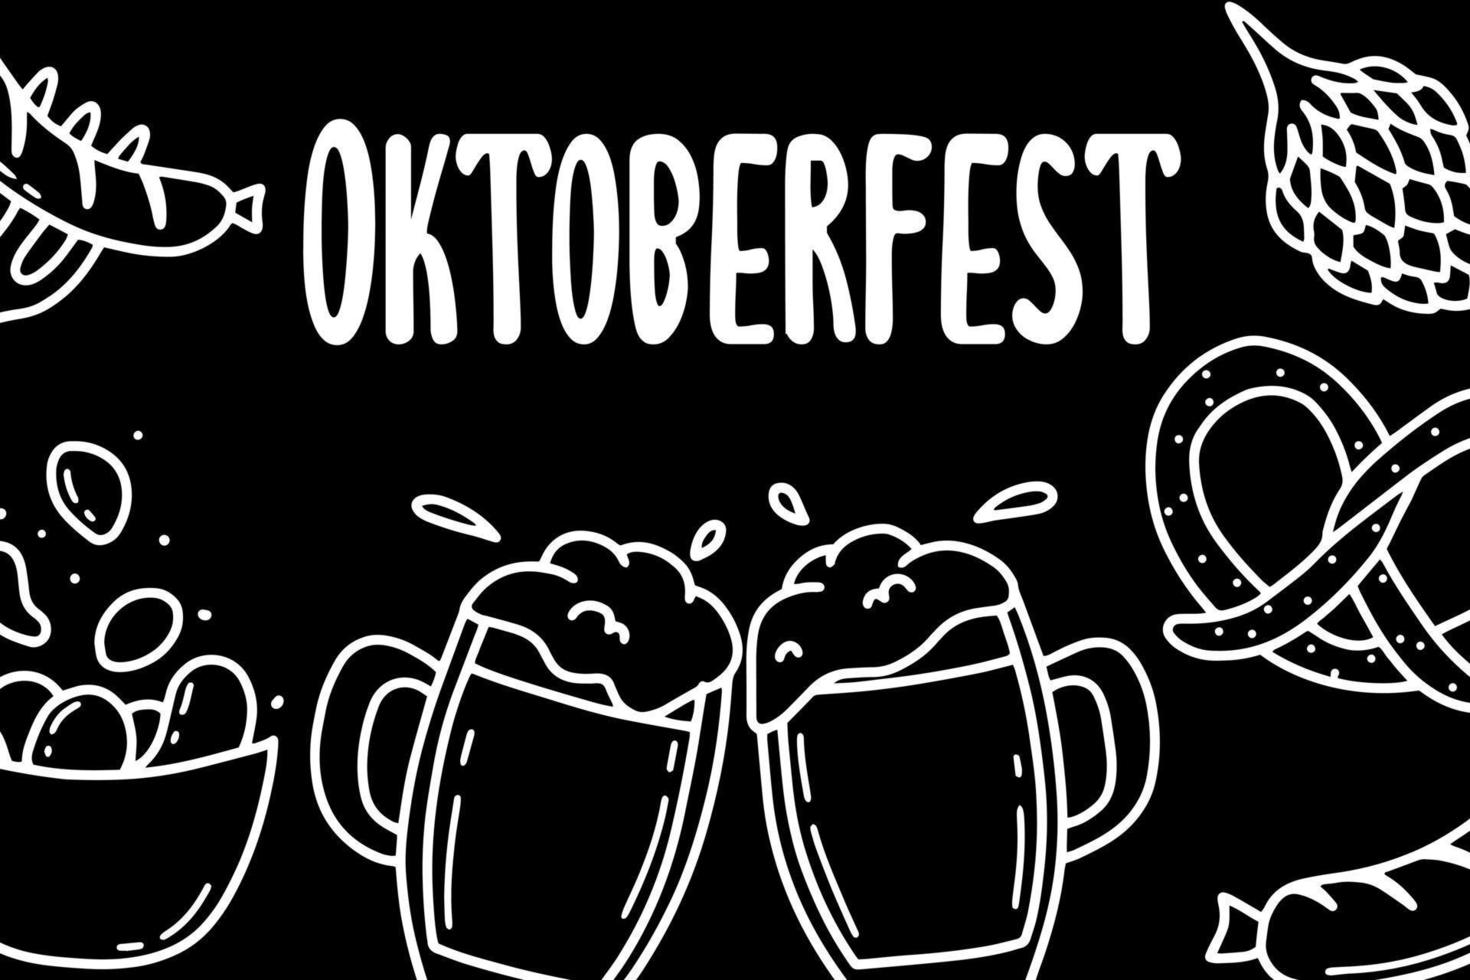 Oktoberfest. pugno di birra. poster con birra. illustrazione vettoriale. stile scarabocchio. vettore